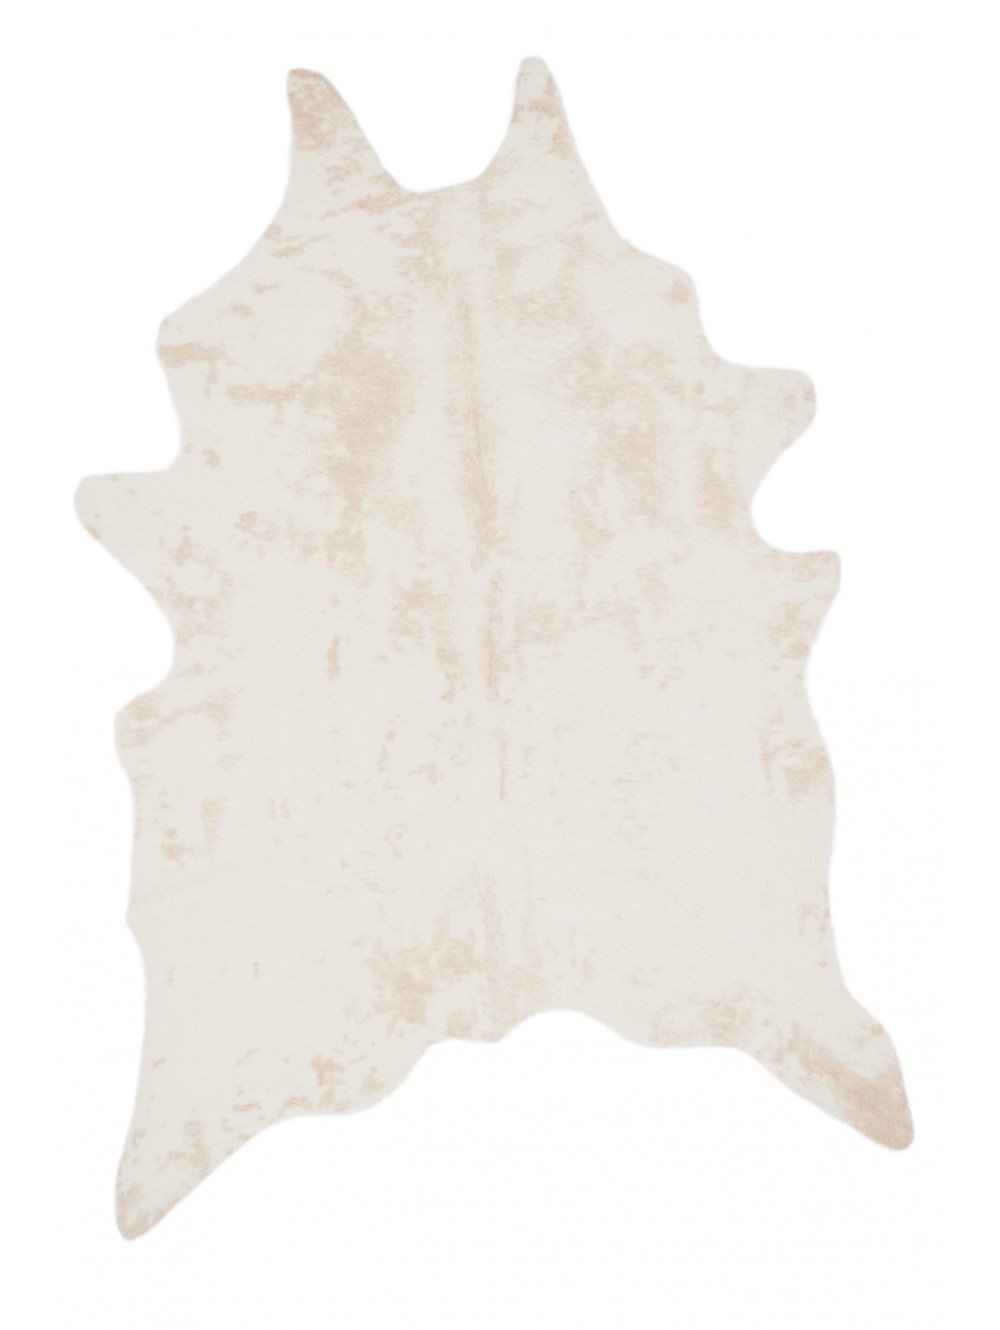 BRIGHTON FAUX COWHIDE RUG, beige 3'10" x 5' - Image 0